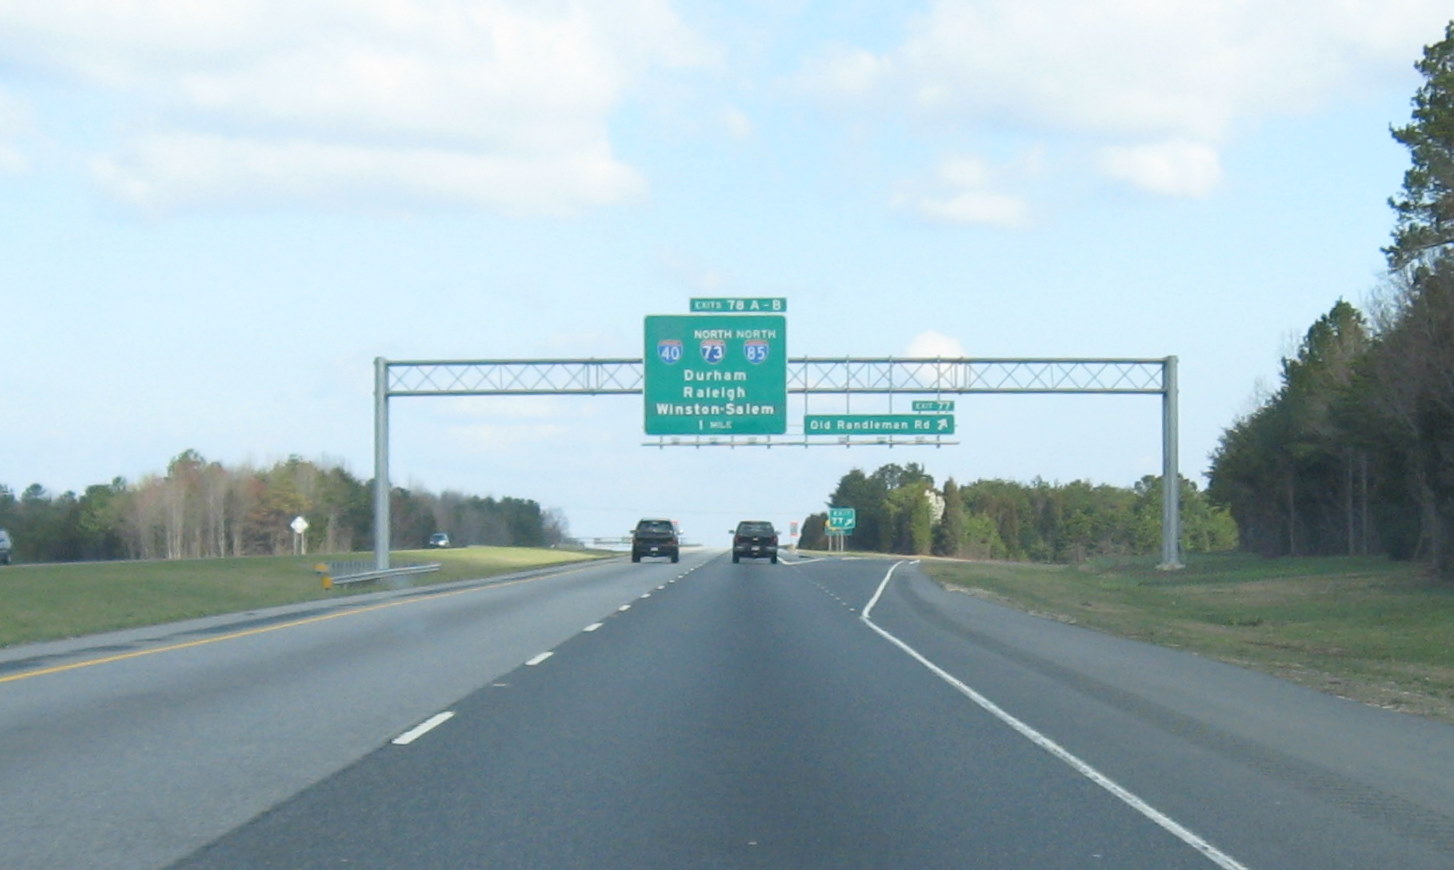 Photo of I-85/I-40/I-73 Overhead sign along US 220 (Future I-73) south 
of Greensboro, NC, March 2008